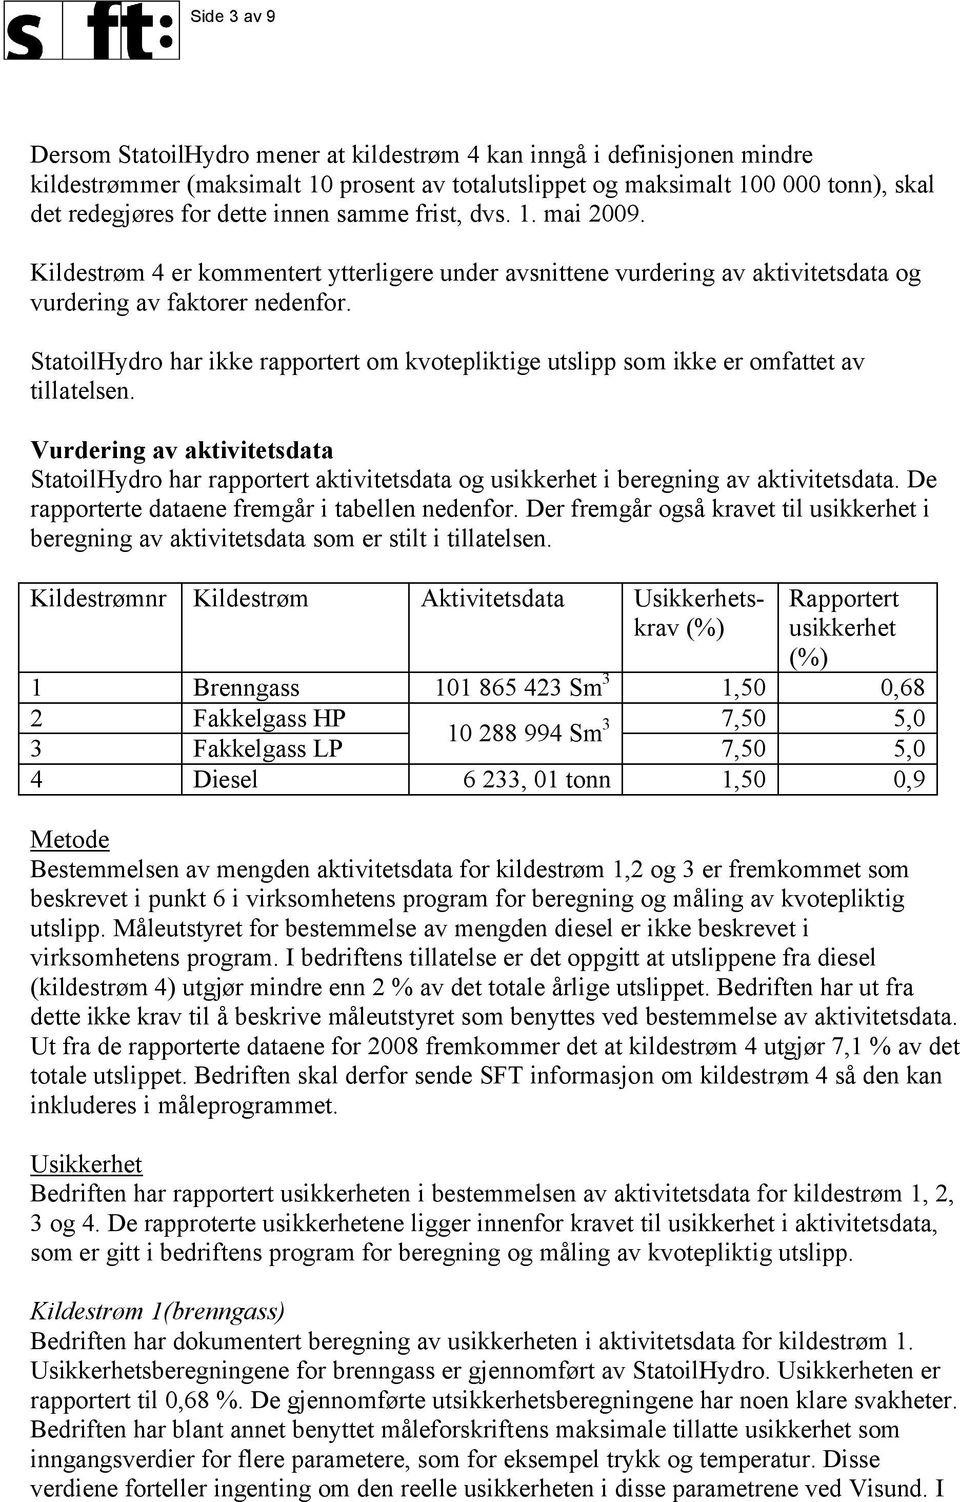 StatoilHydro har ikke rapportert om kvotepliktige utslipp som ikke er omfattet av tillatelsen.